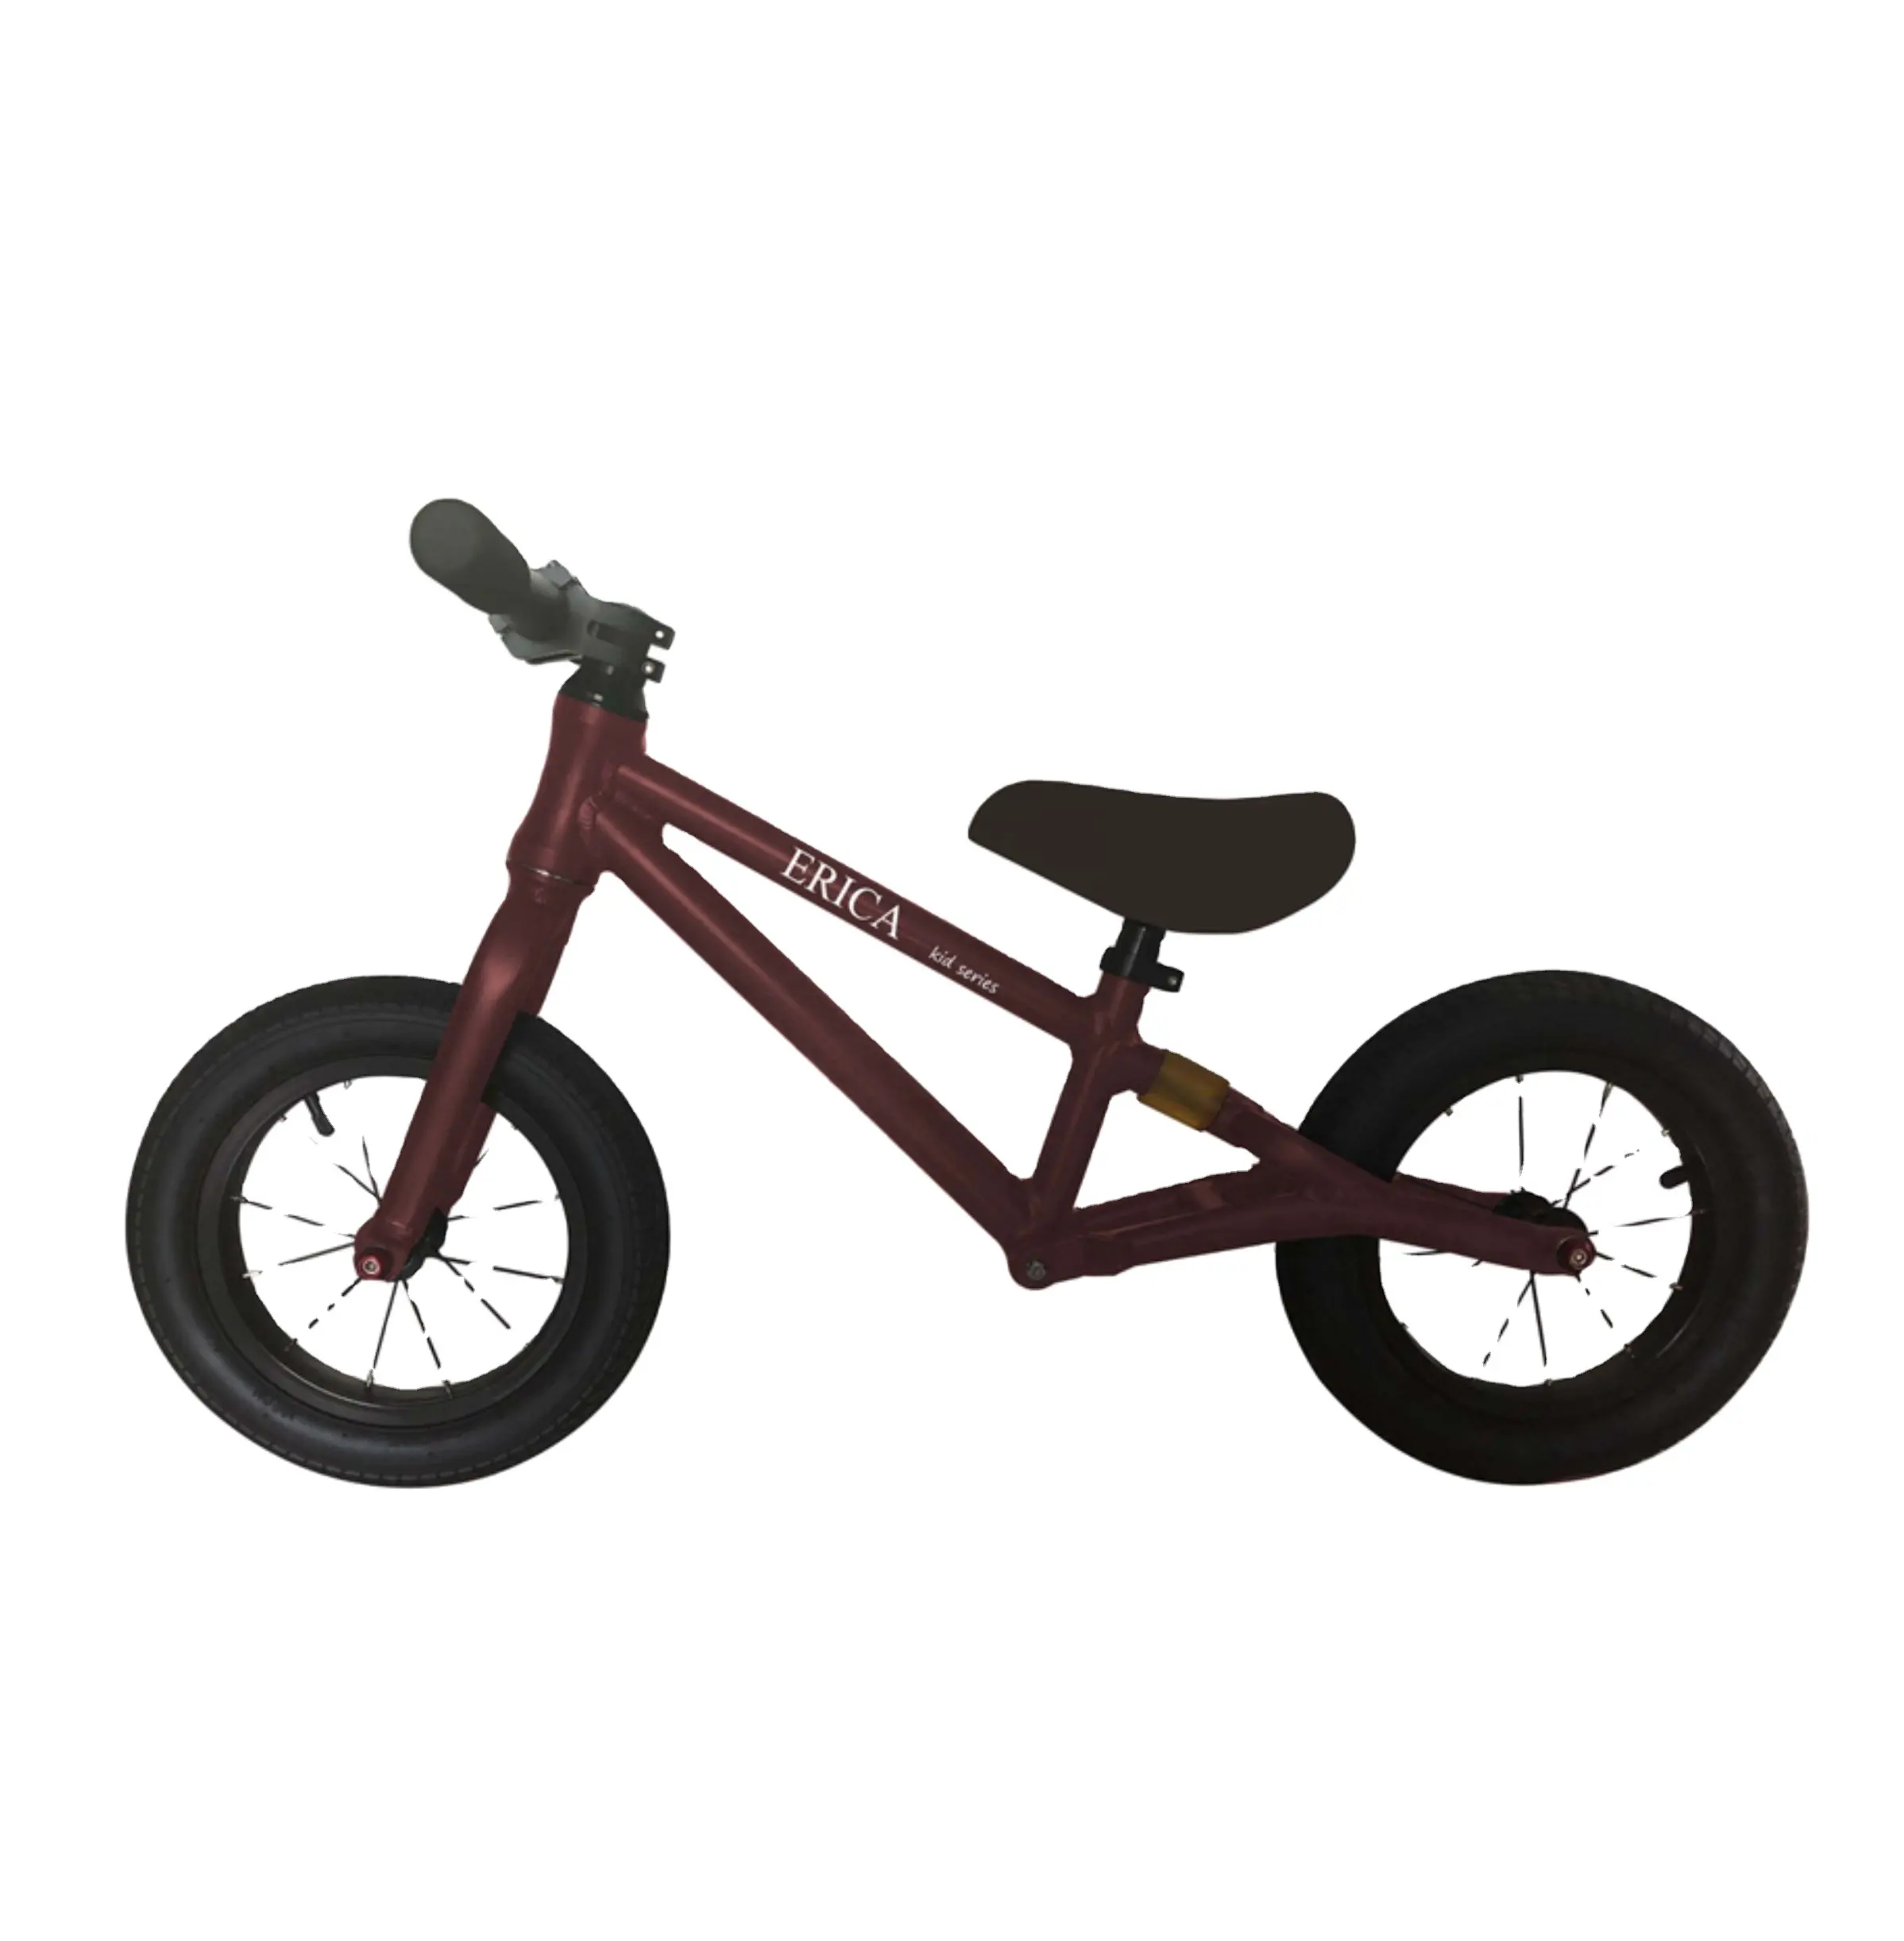 OEM ราคาถูก12นิ้วเหล็กคาร์บอน4ปีเด็กสมดุลจักรยานเด็กจักรยาน